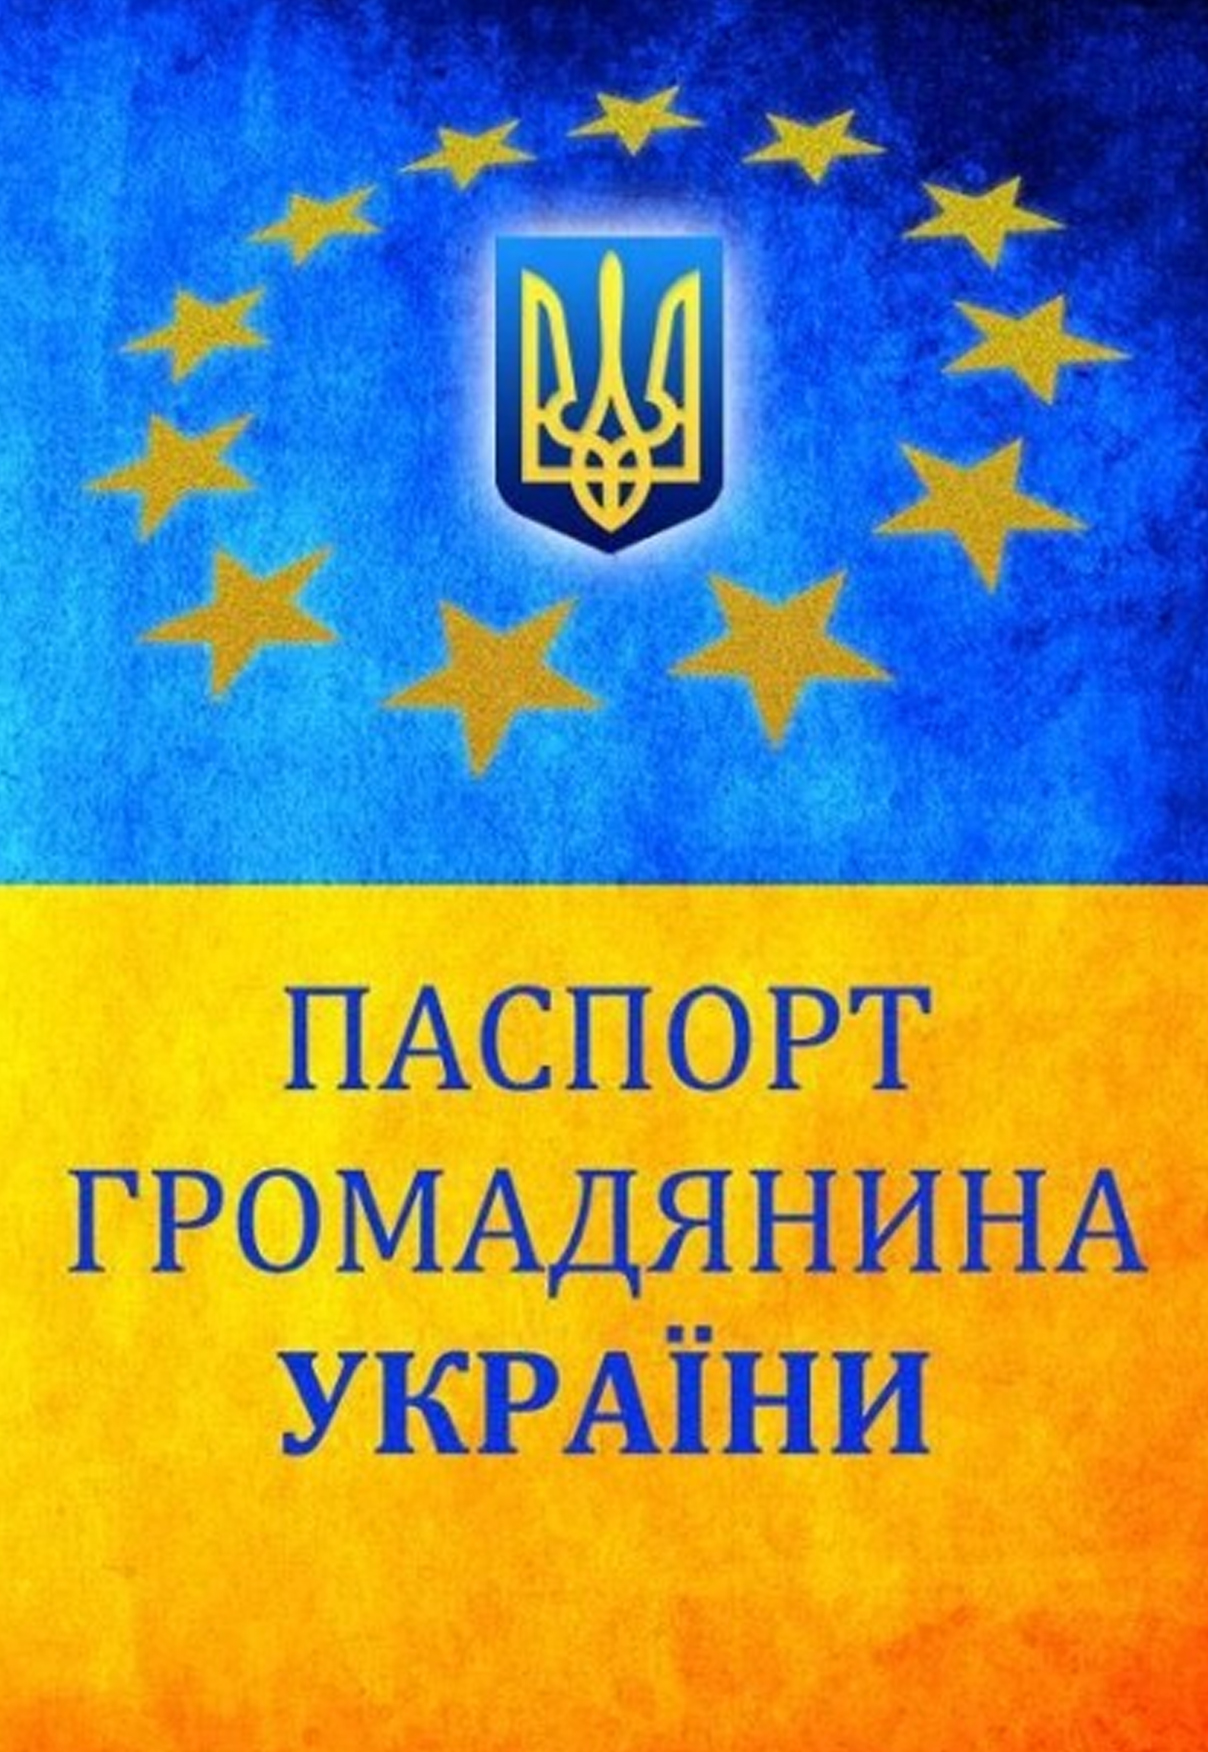 Принадлежность к гражданству Украины